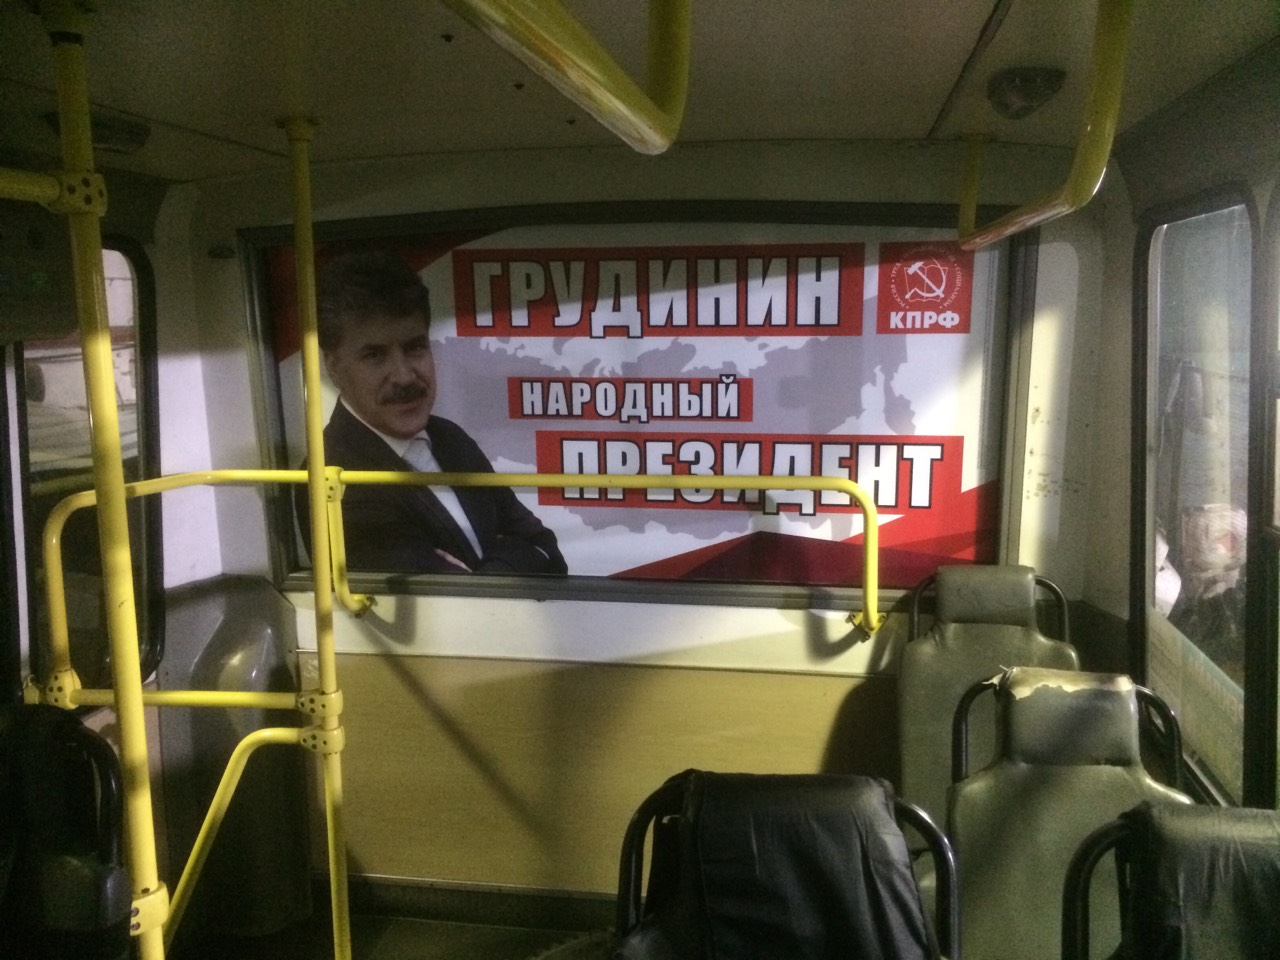 Реклама в маршрутном такси